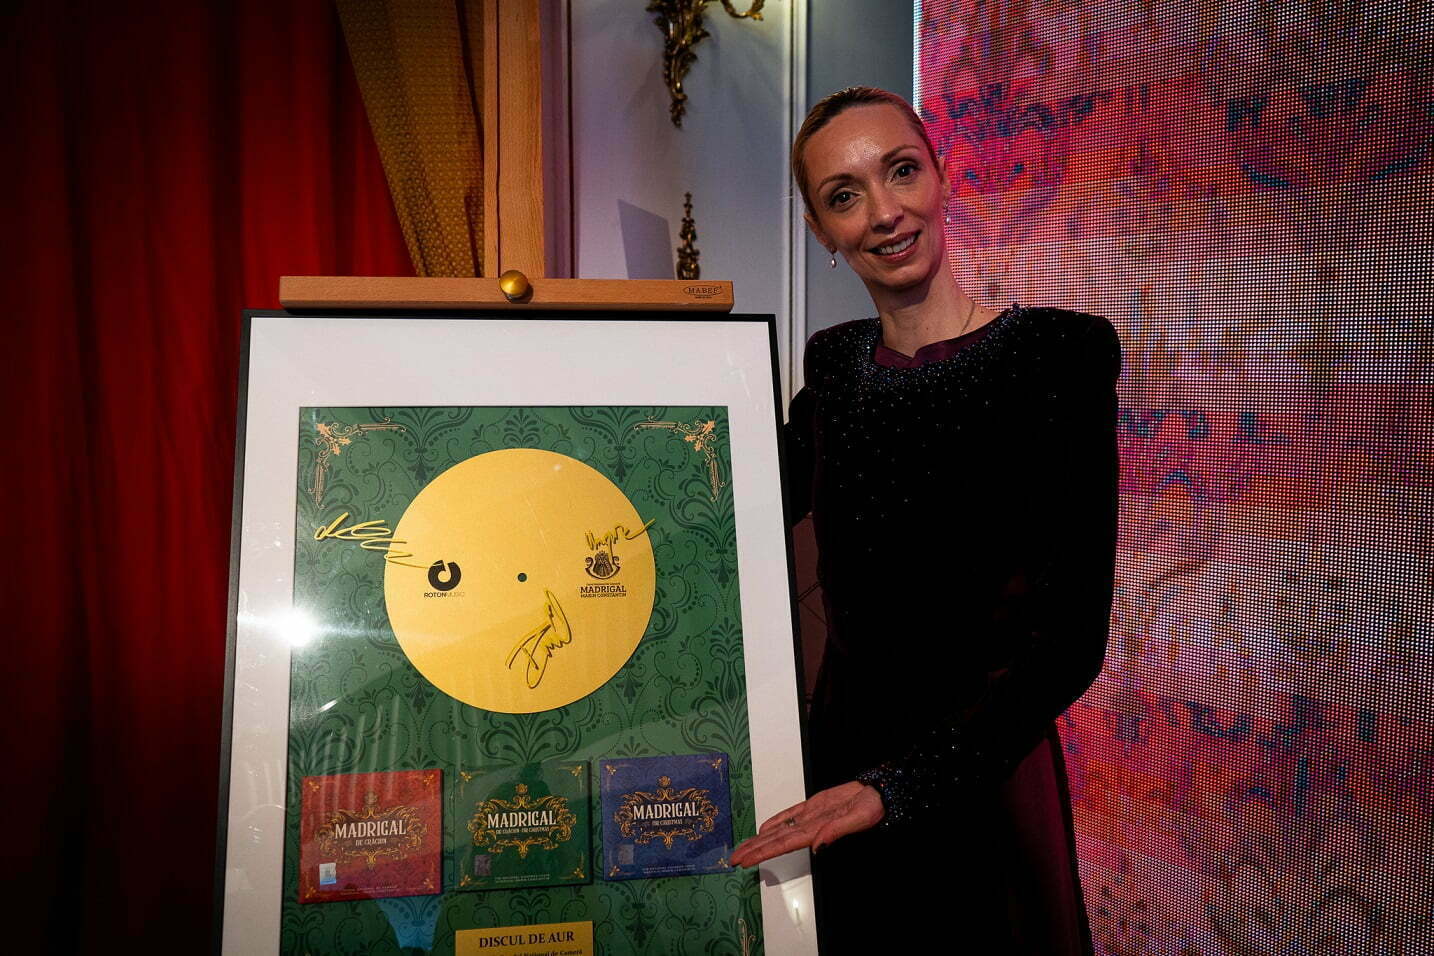 Nylon orientation Dislocation Corul Madrigal a primit Discul de aur pentru albumele de Crăciun • Muzică •  Zile și Nopți